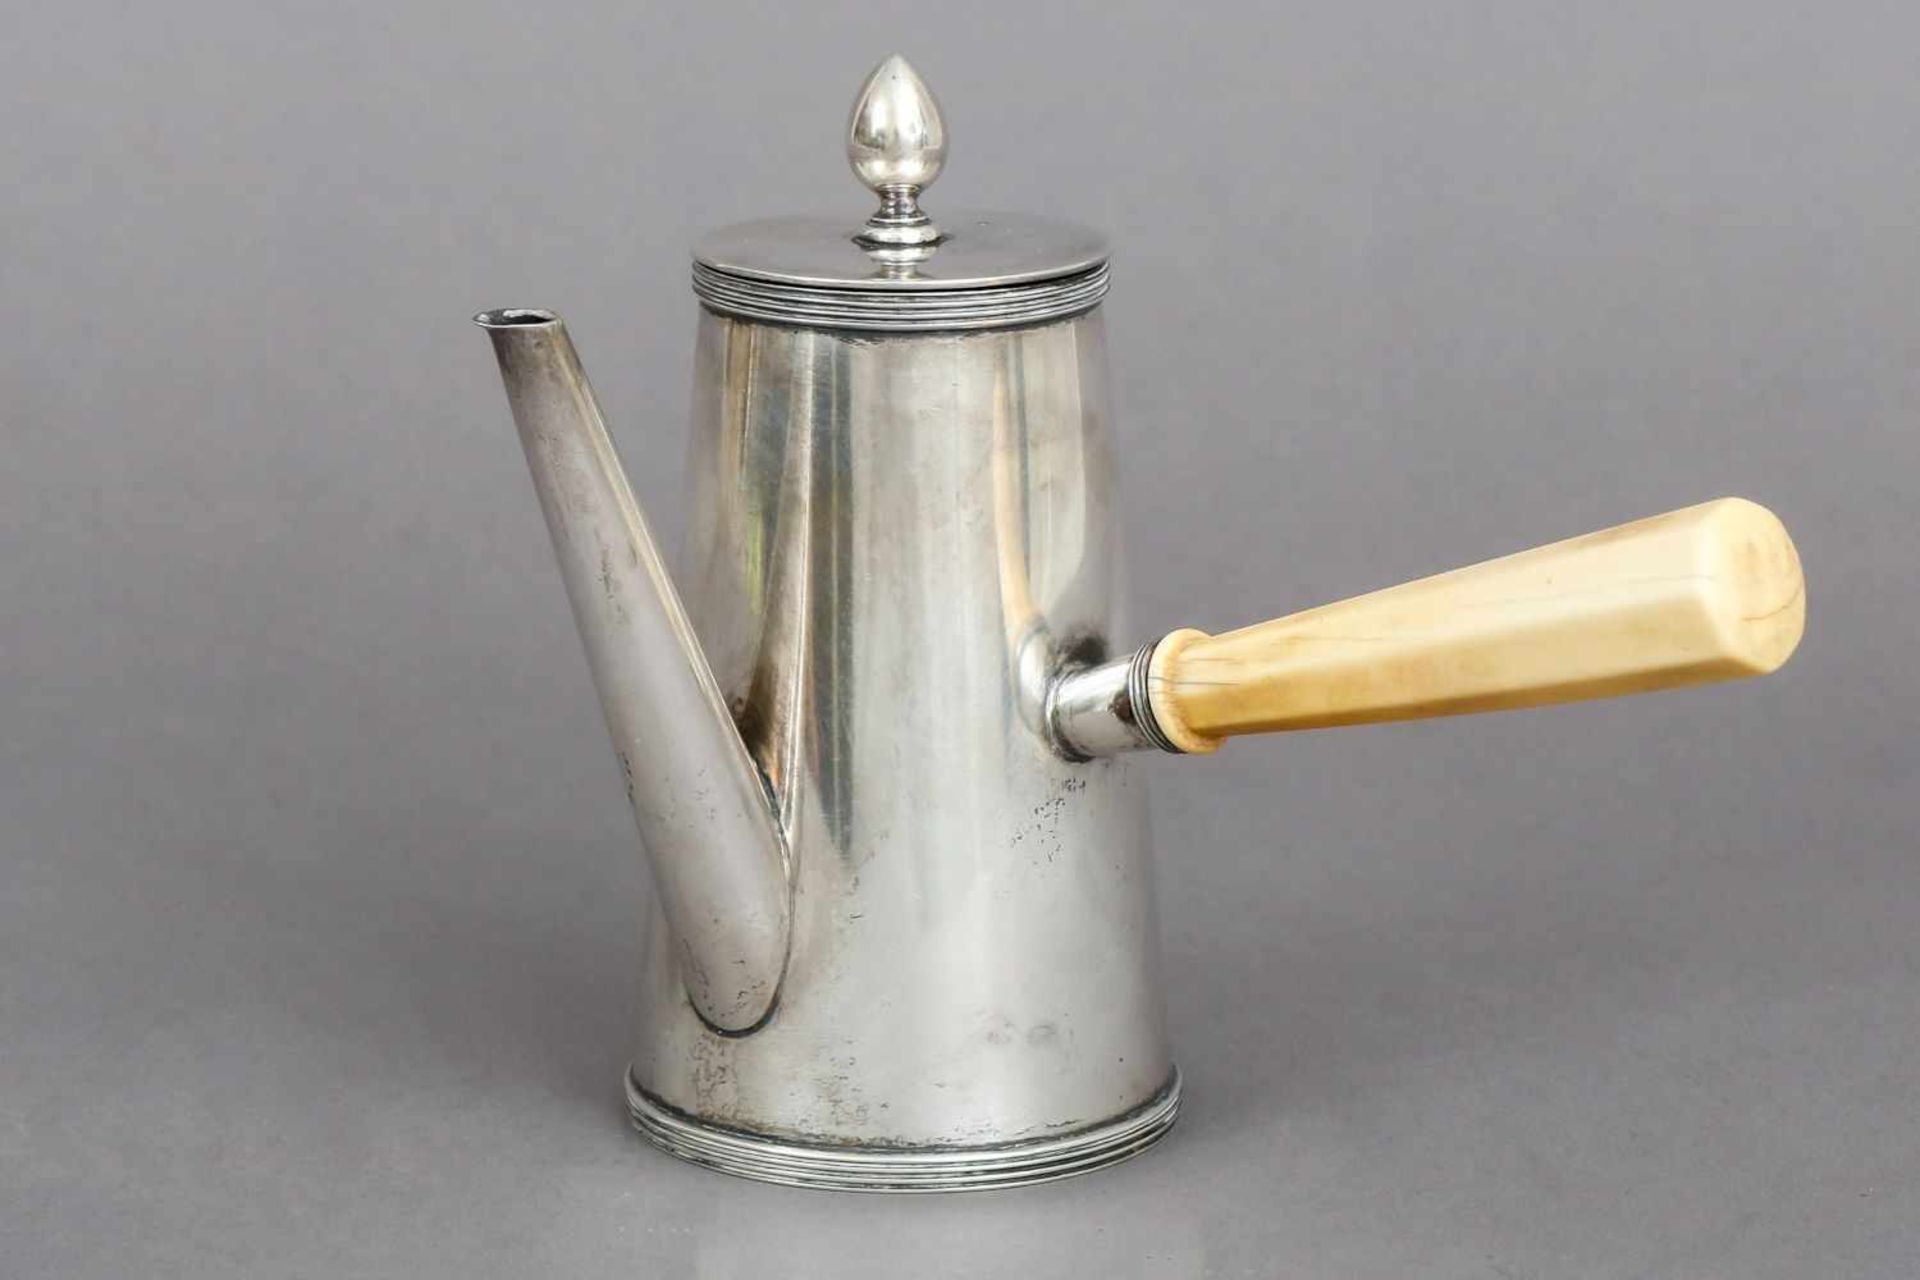 Silber MokkakanneHolland, um 1900, konischer, glatter Korpus mit Scharnierdeckel, Zapfenknauf, 1